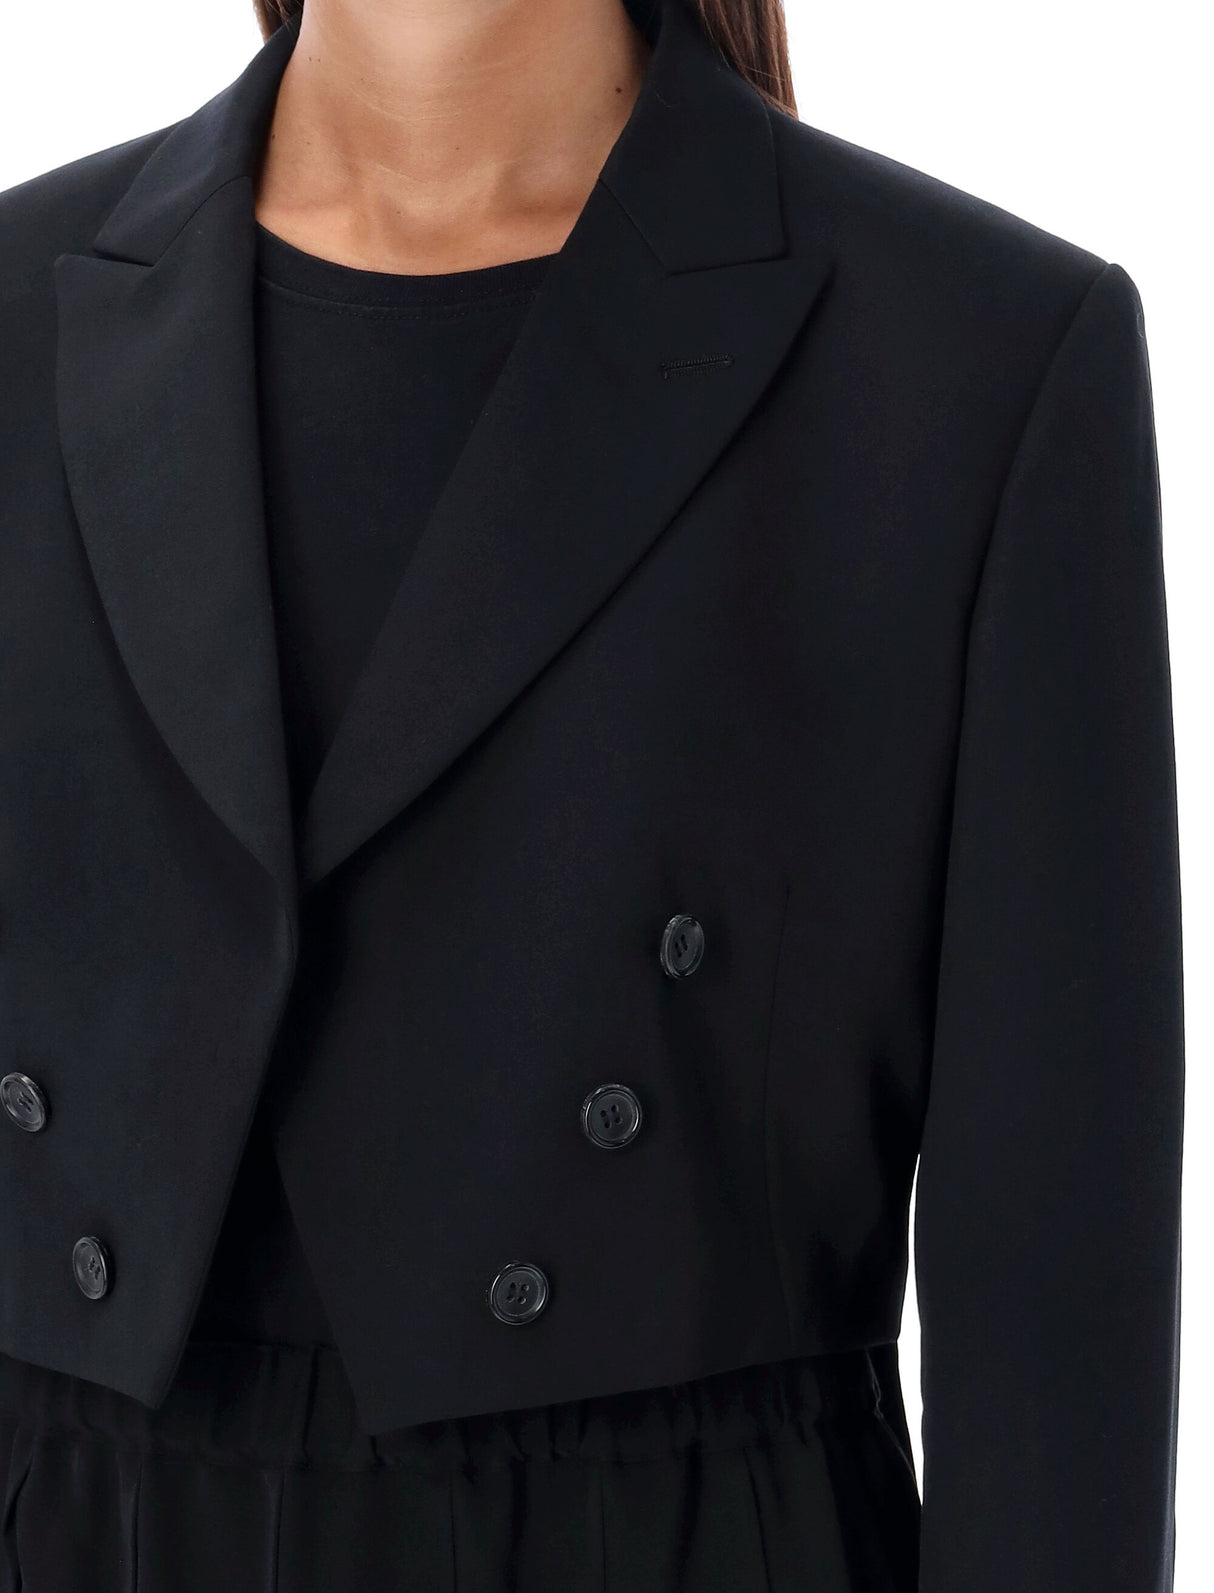 Bộ sưu tập: Spencer - Áo Jacket đen thời trang cho phụ nữ